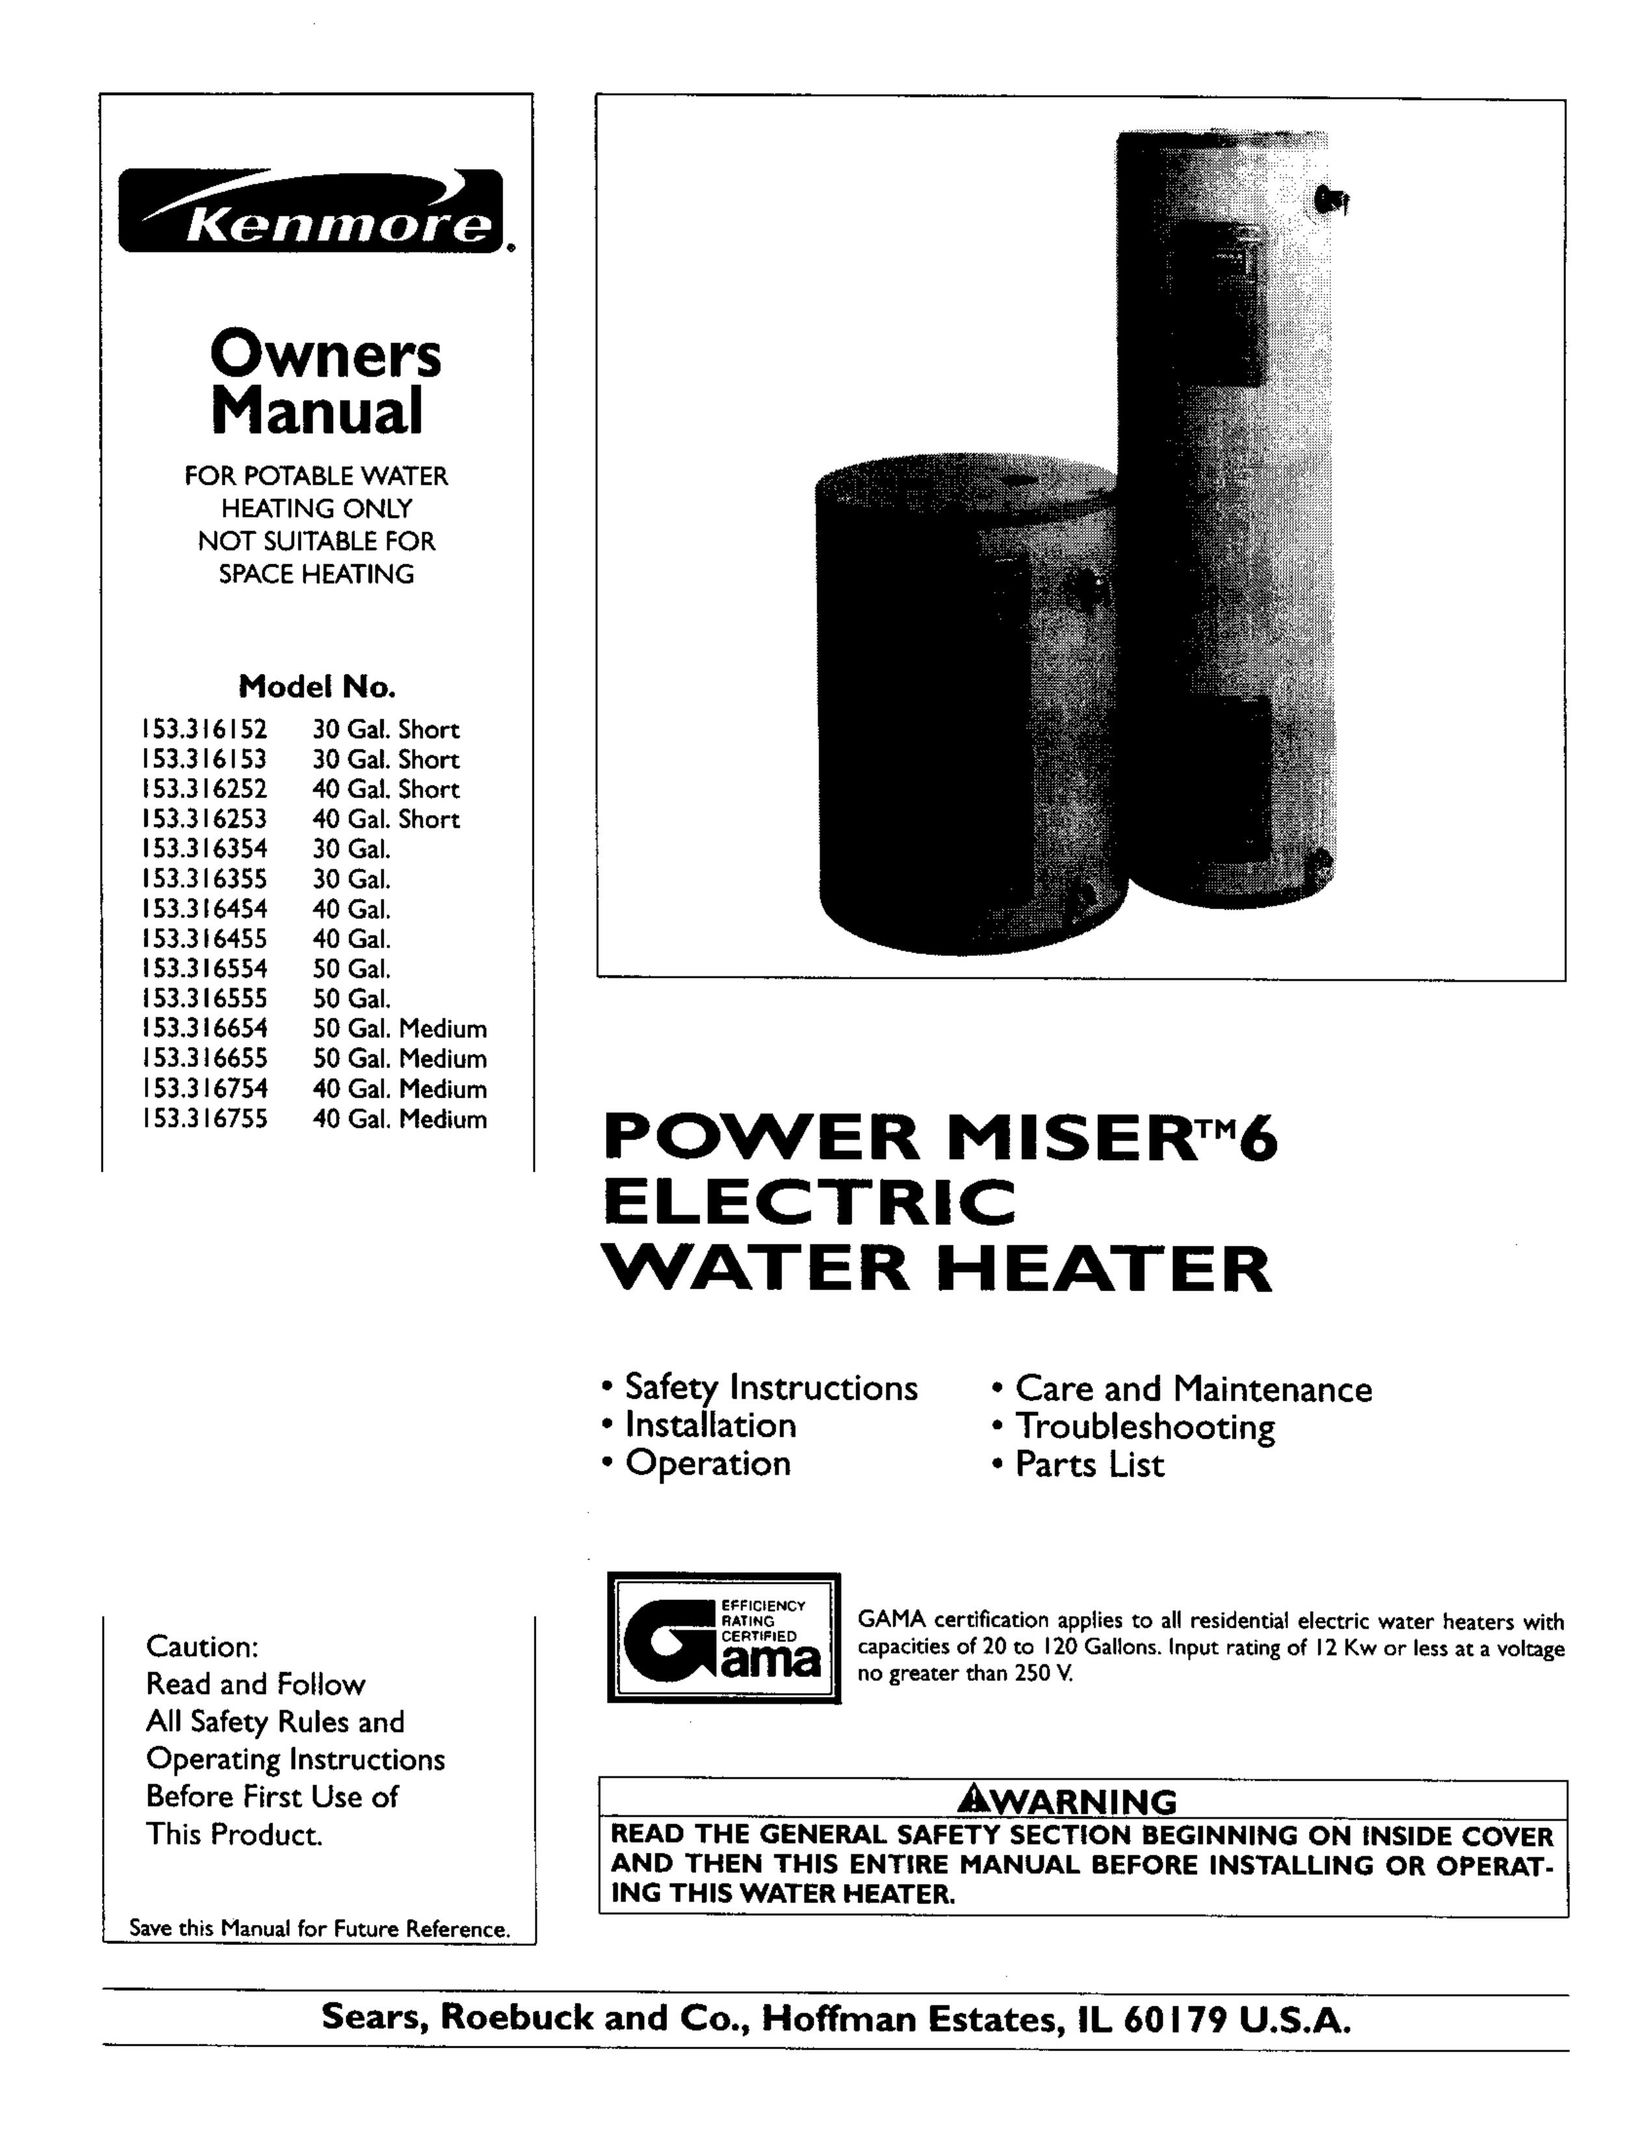 Kenmore 153.316253 Water Heater User Manual